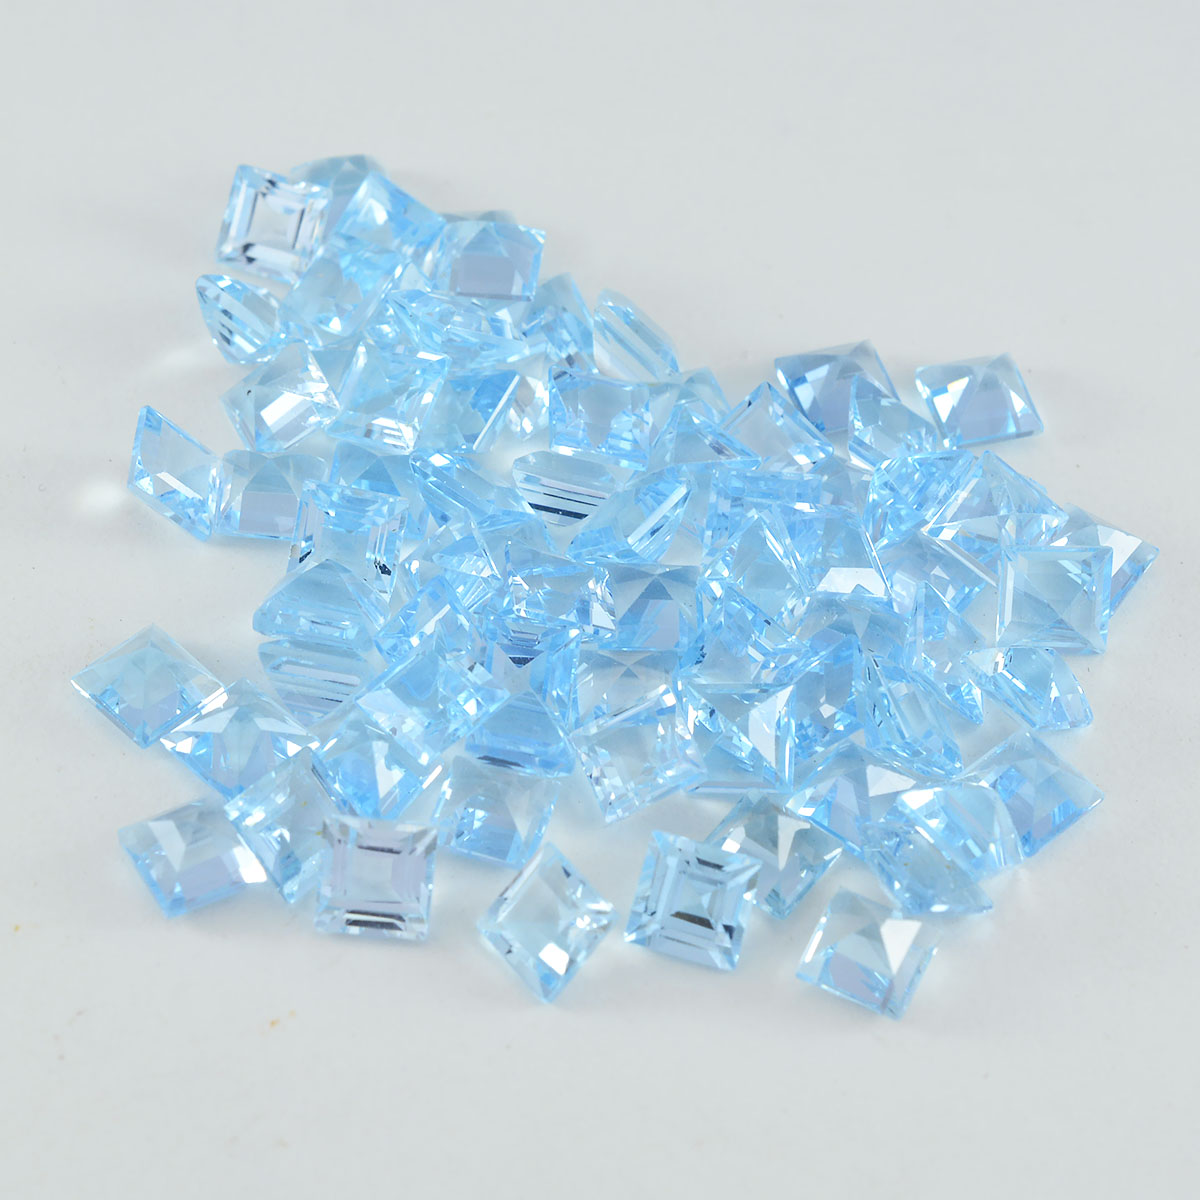 riyogems 1pc ナチュラル ブルー トパーズ ファセット 5x5 mm 正方形の高品質の宝石